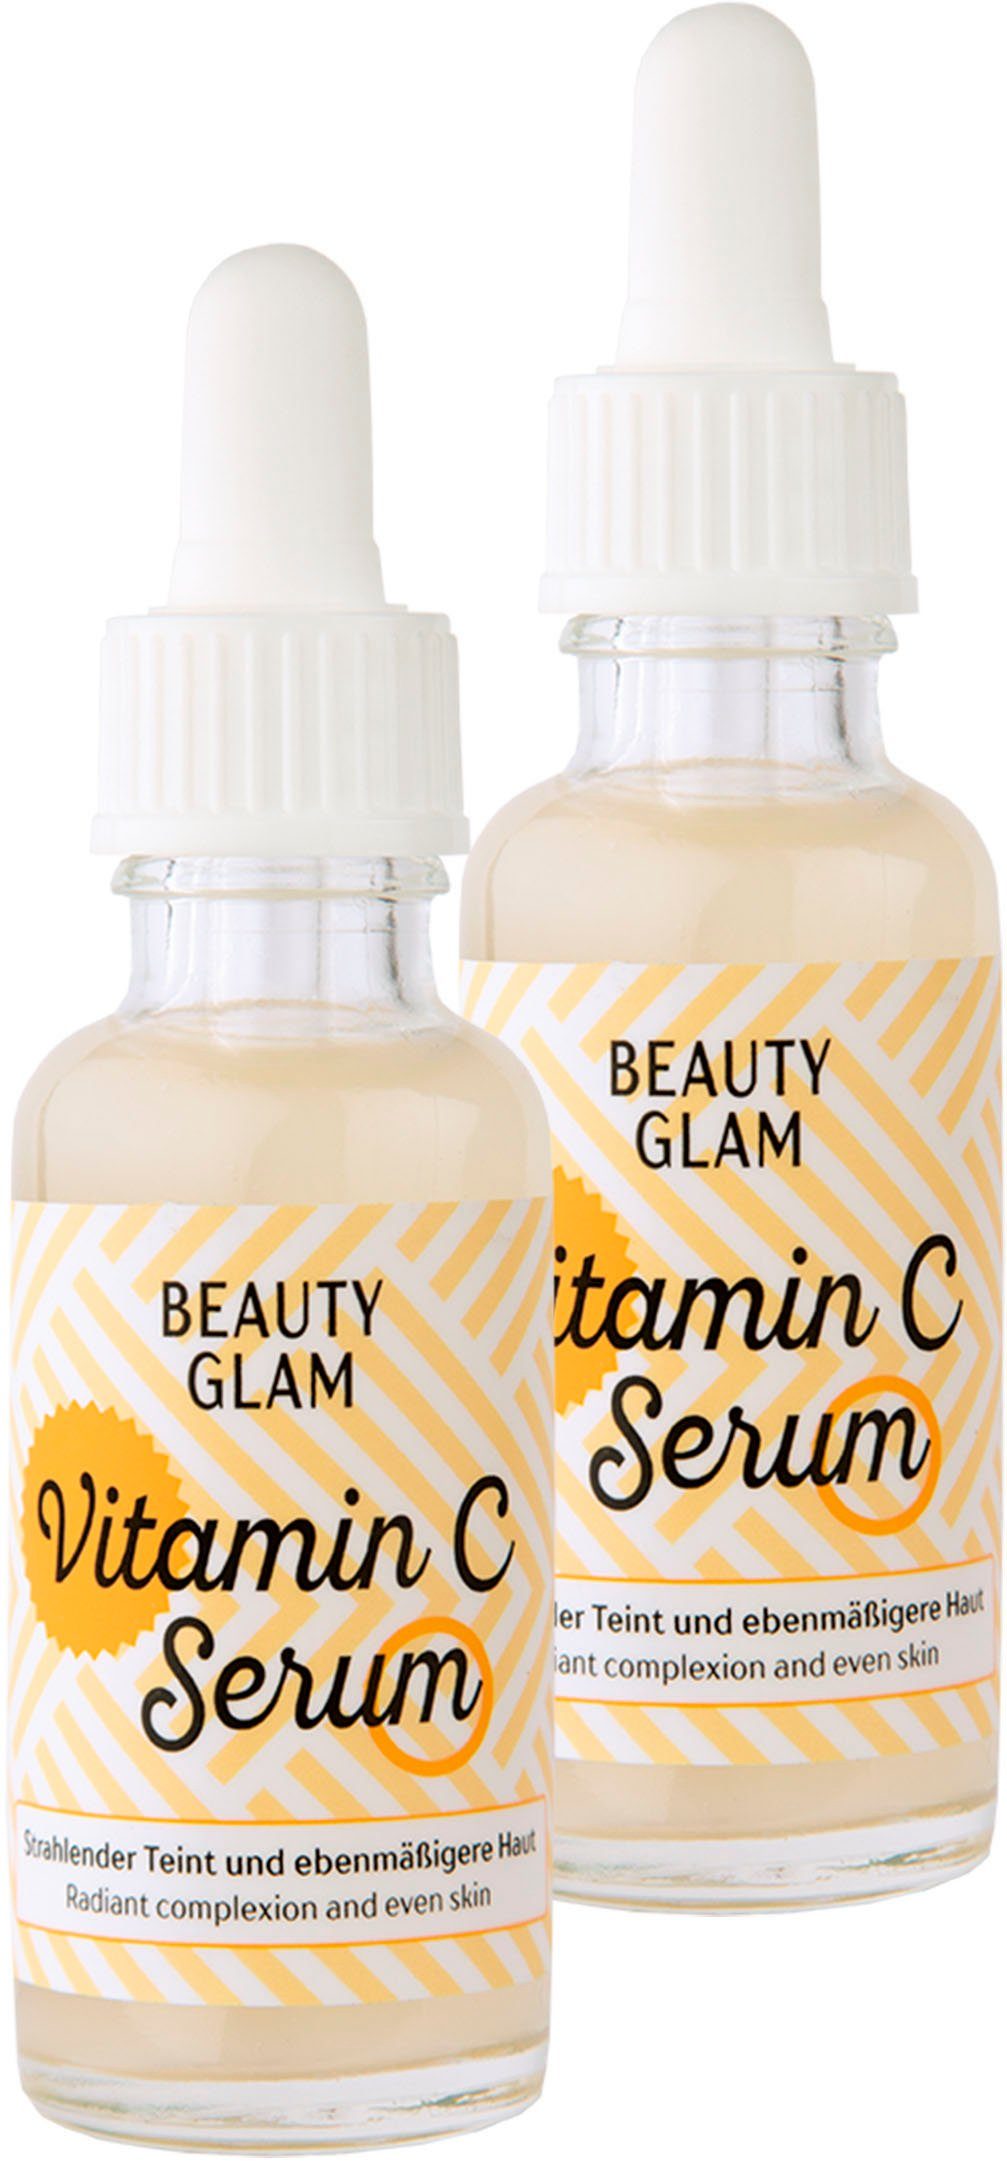 Damen Gesichtspflege BEAUTY GLAM Gesichtspflege-Set Vitamin C Serum, 2-tlg.